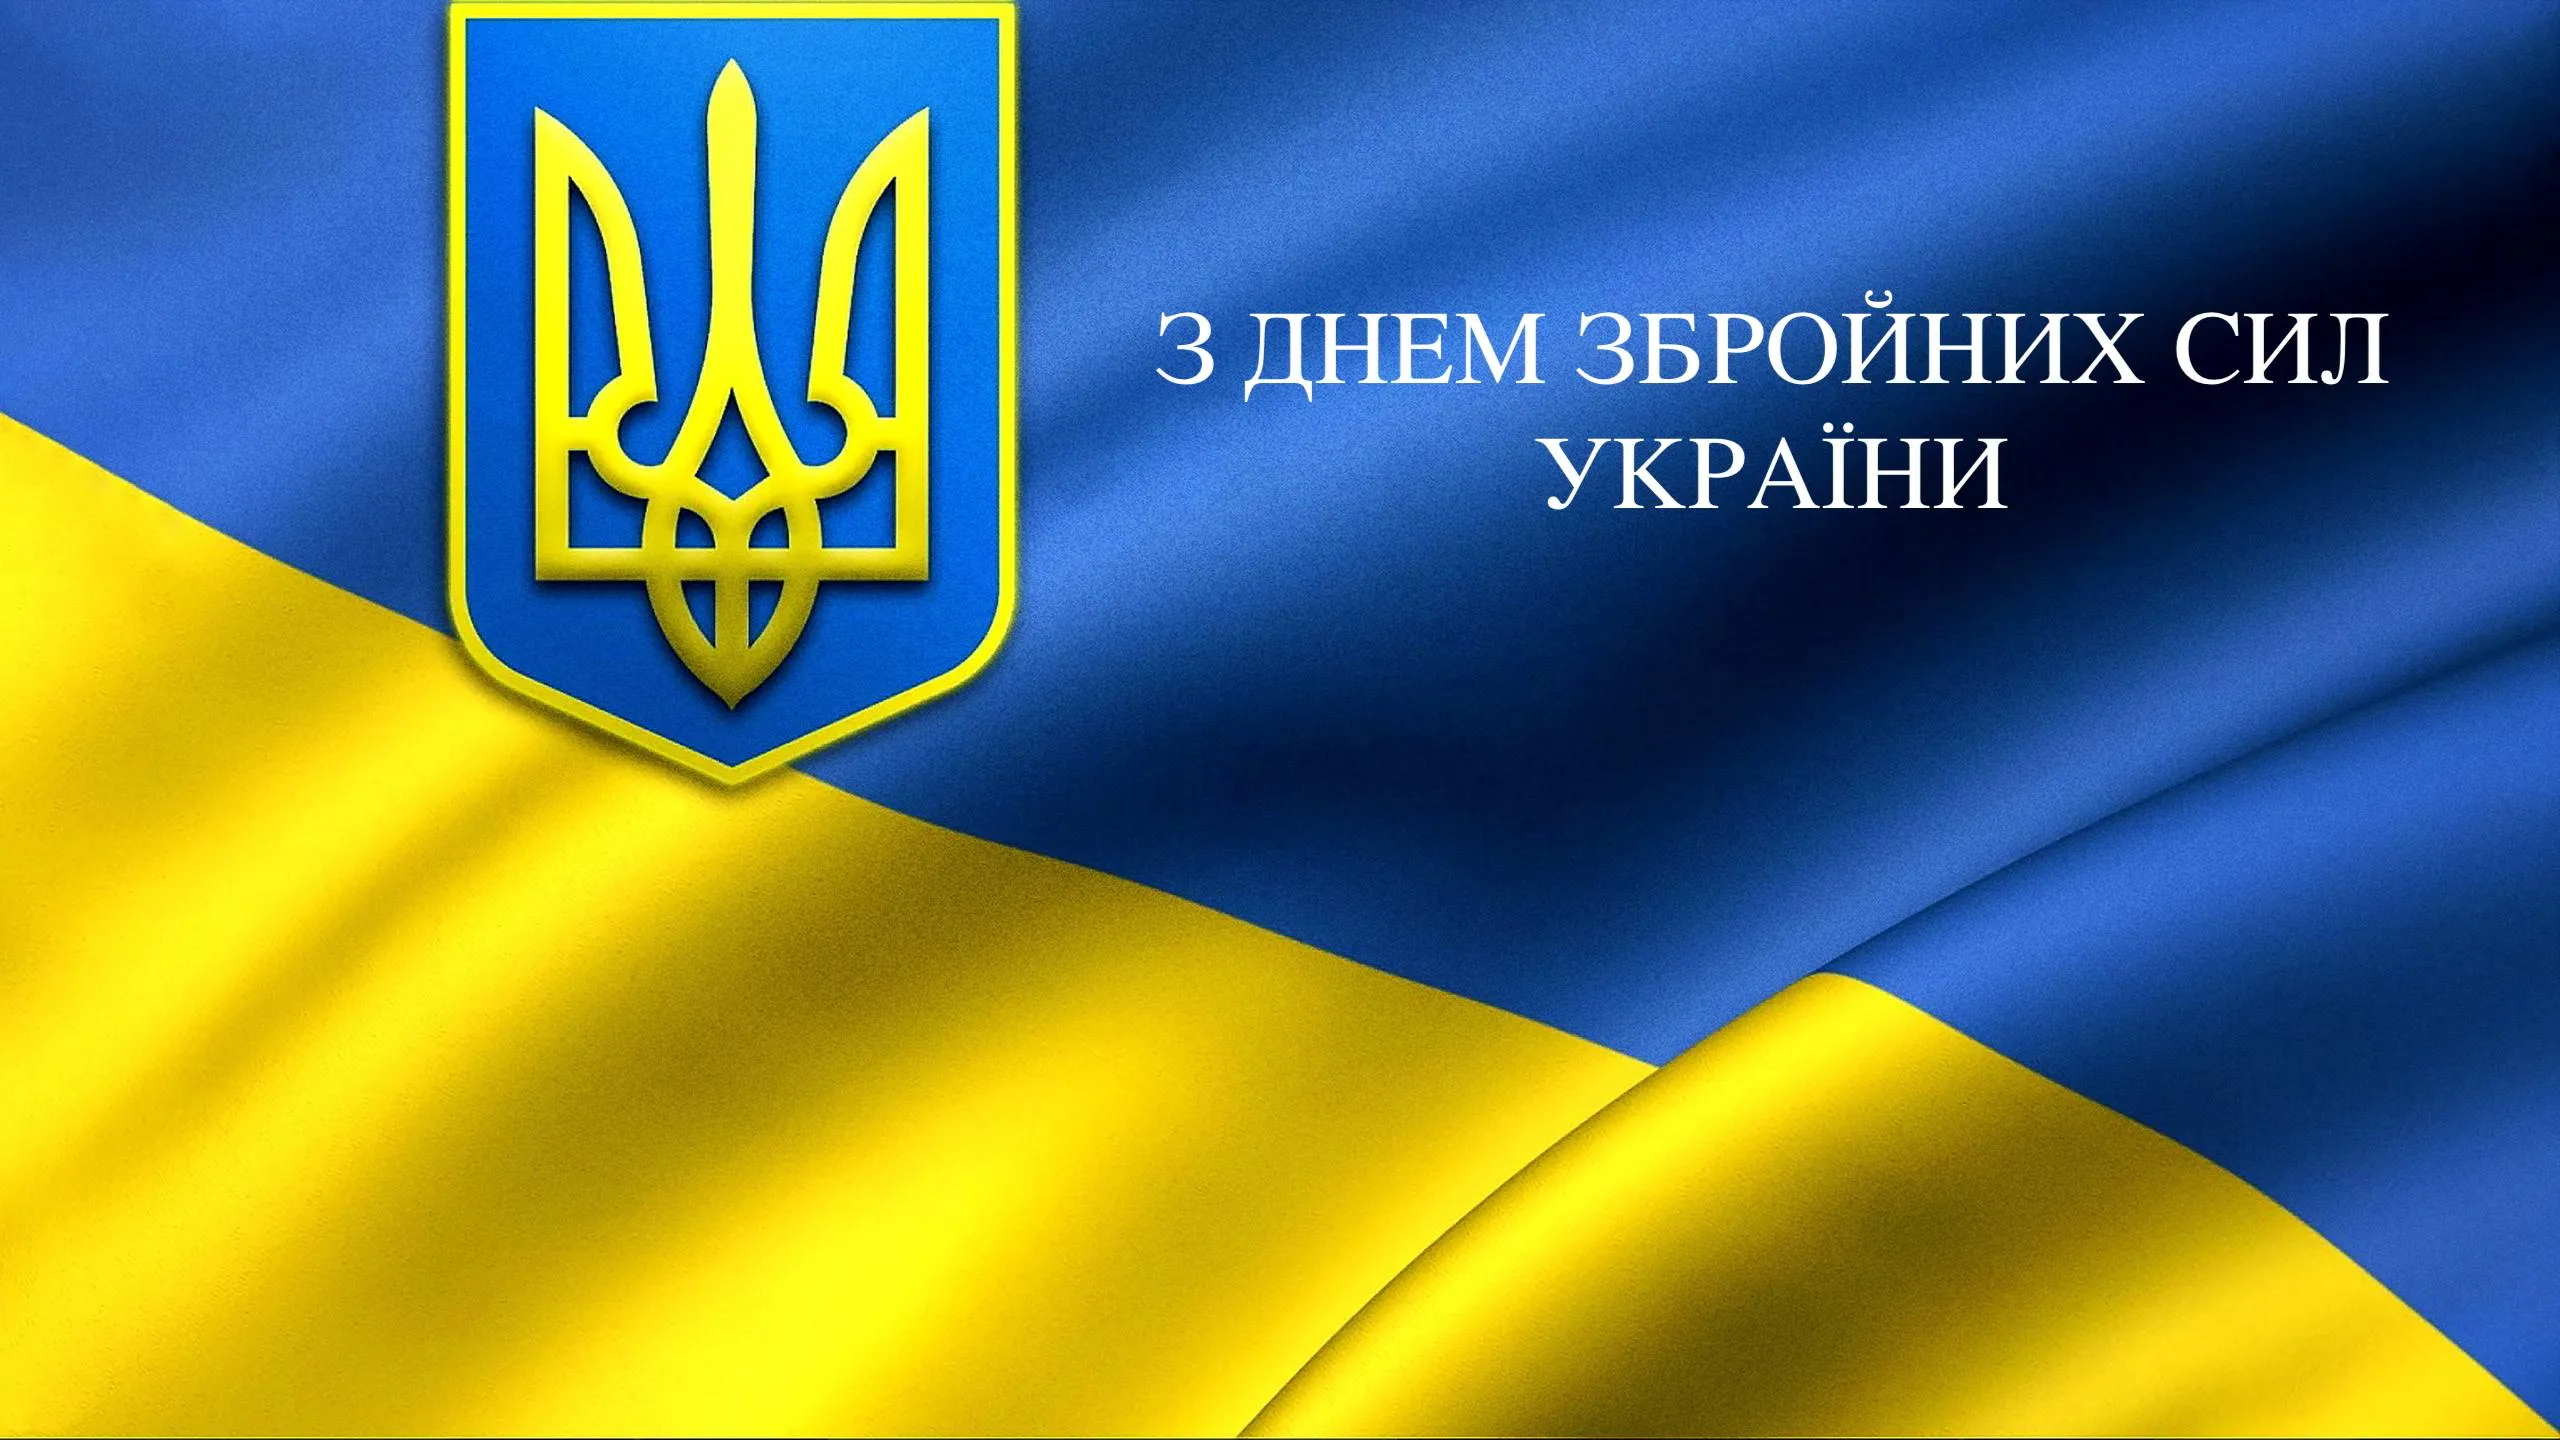 Привітання у прозі та віршах з днем Збройних сил України